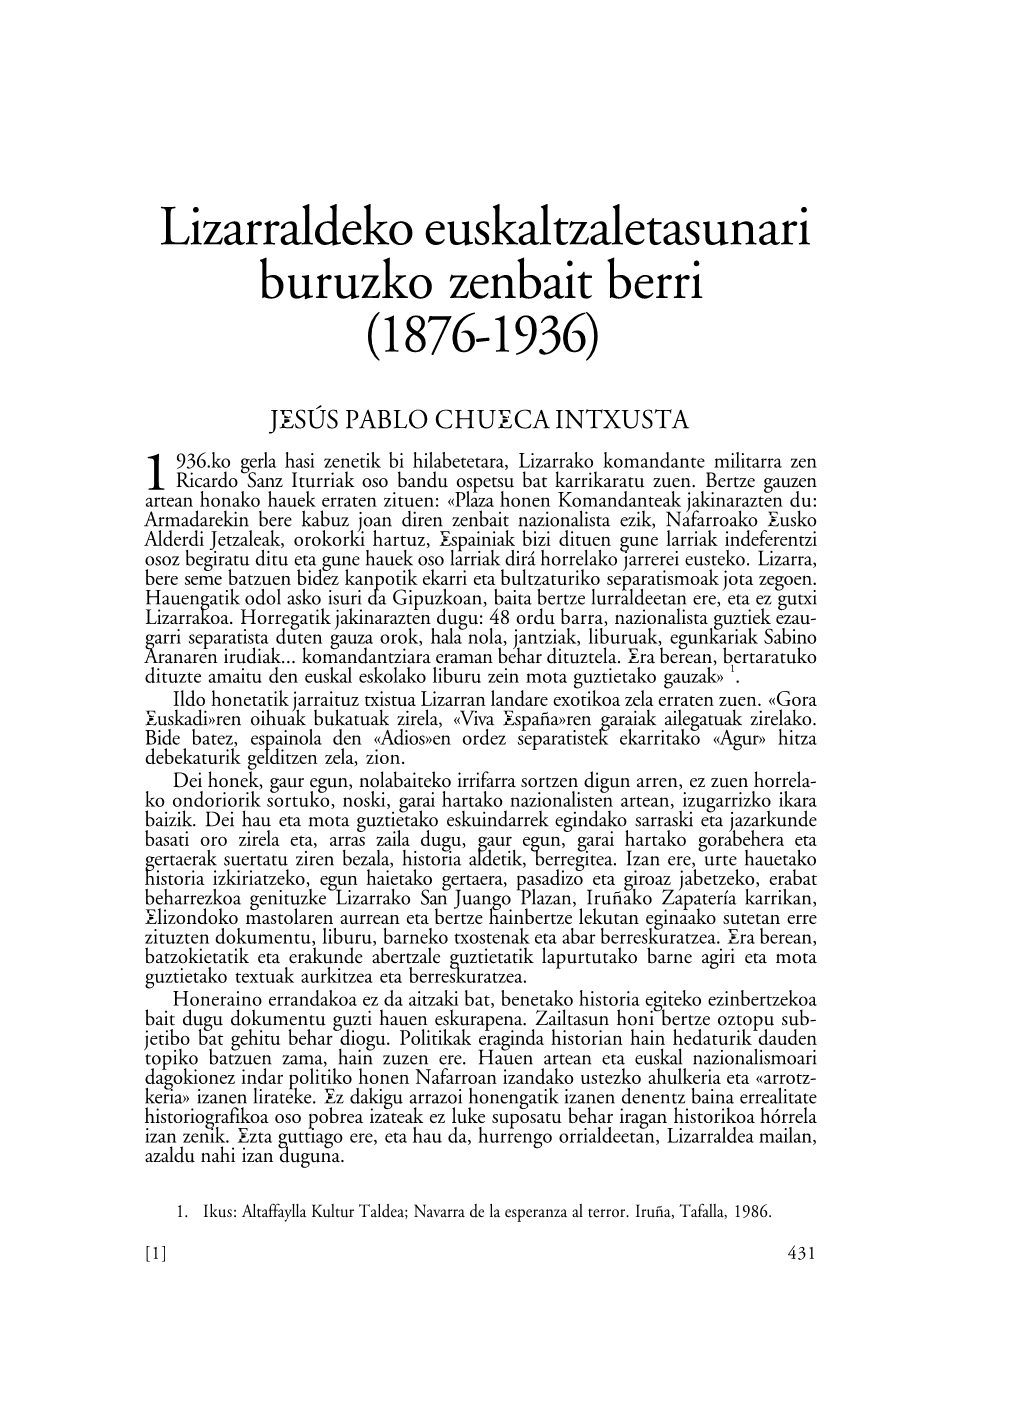 Lizarraldeko Euskaltzletasunari Buruzco Zenbait Berri (1876-1936)